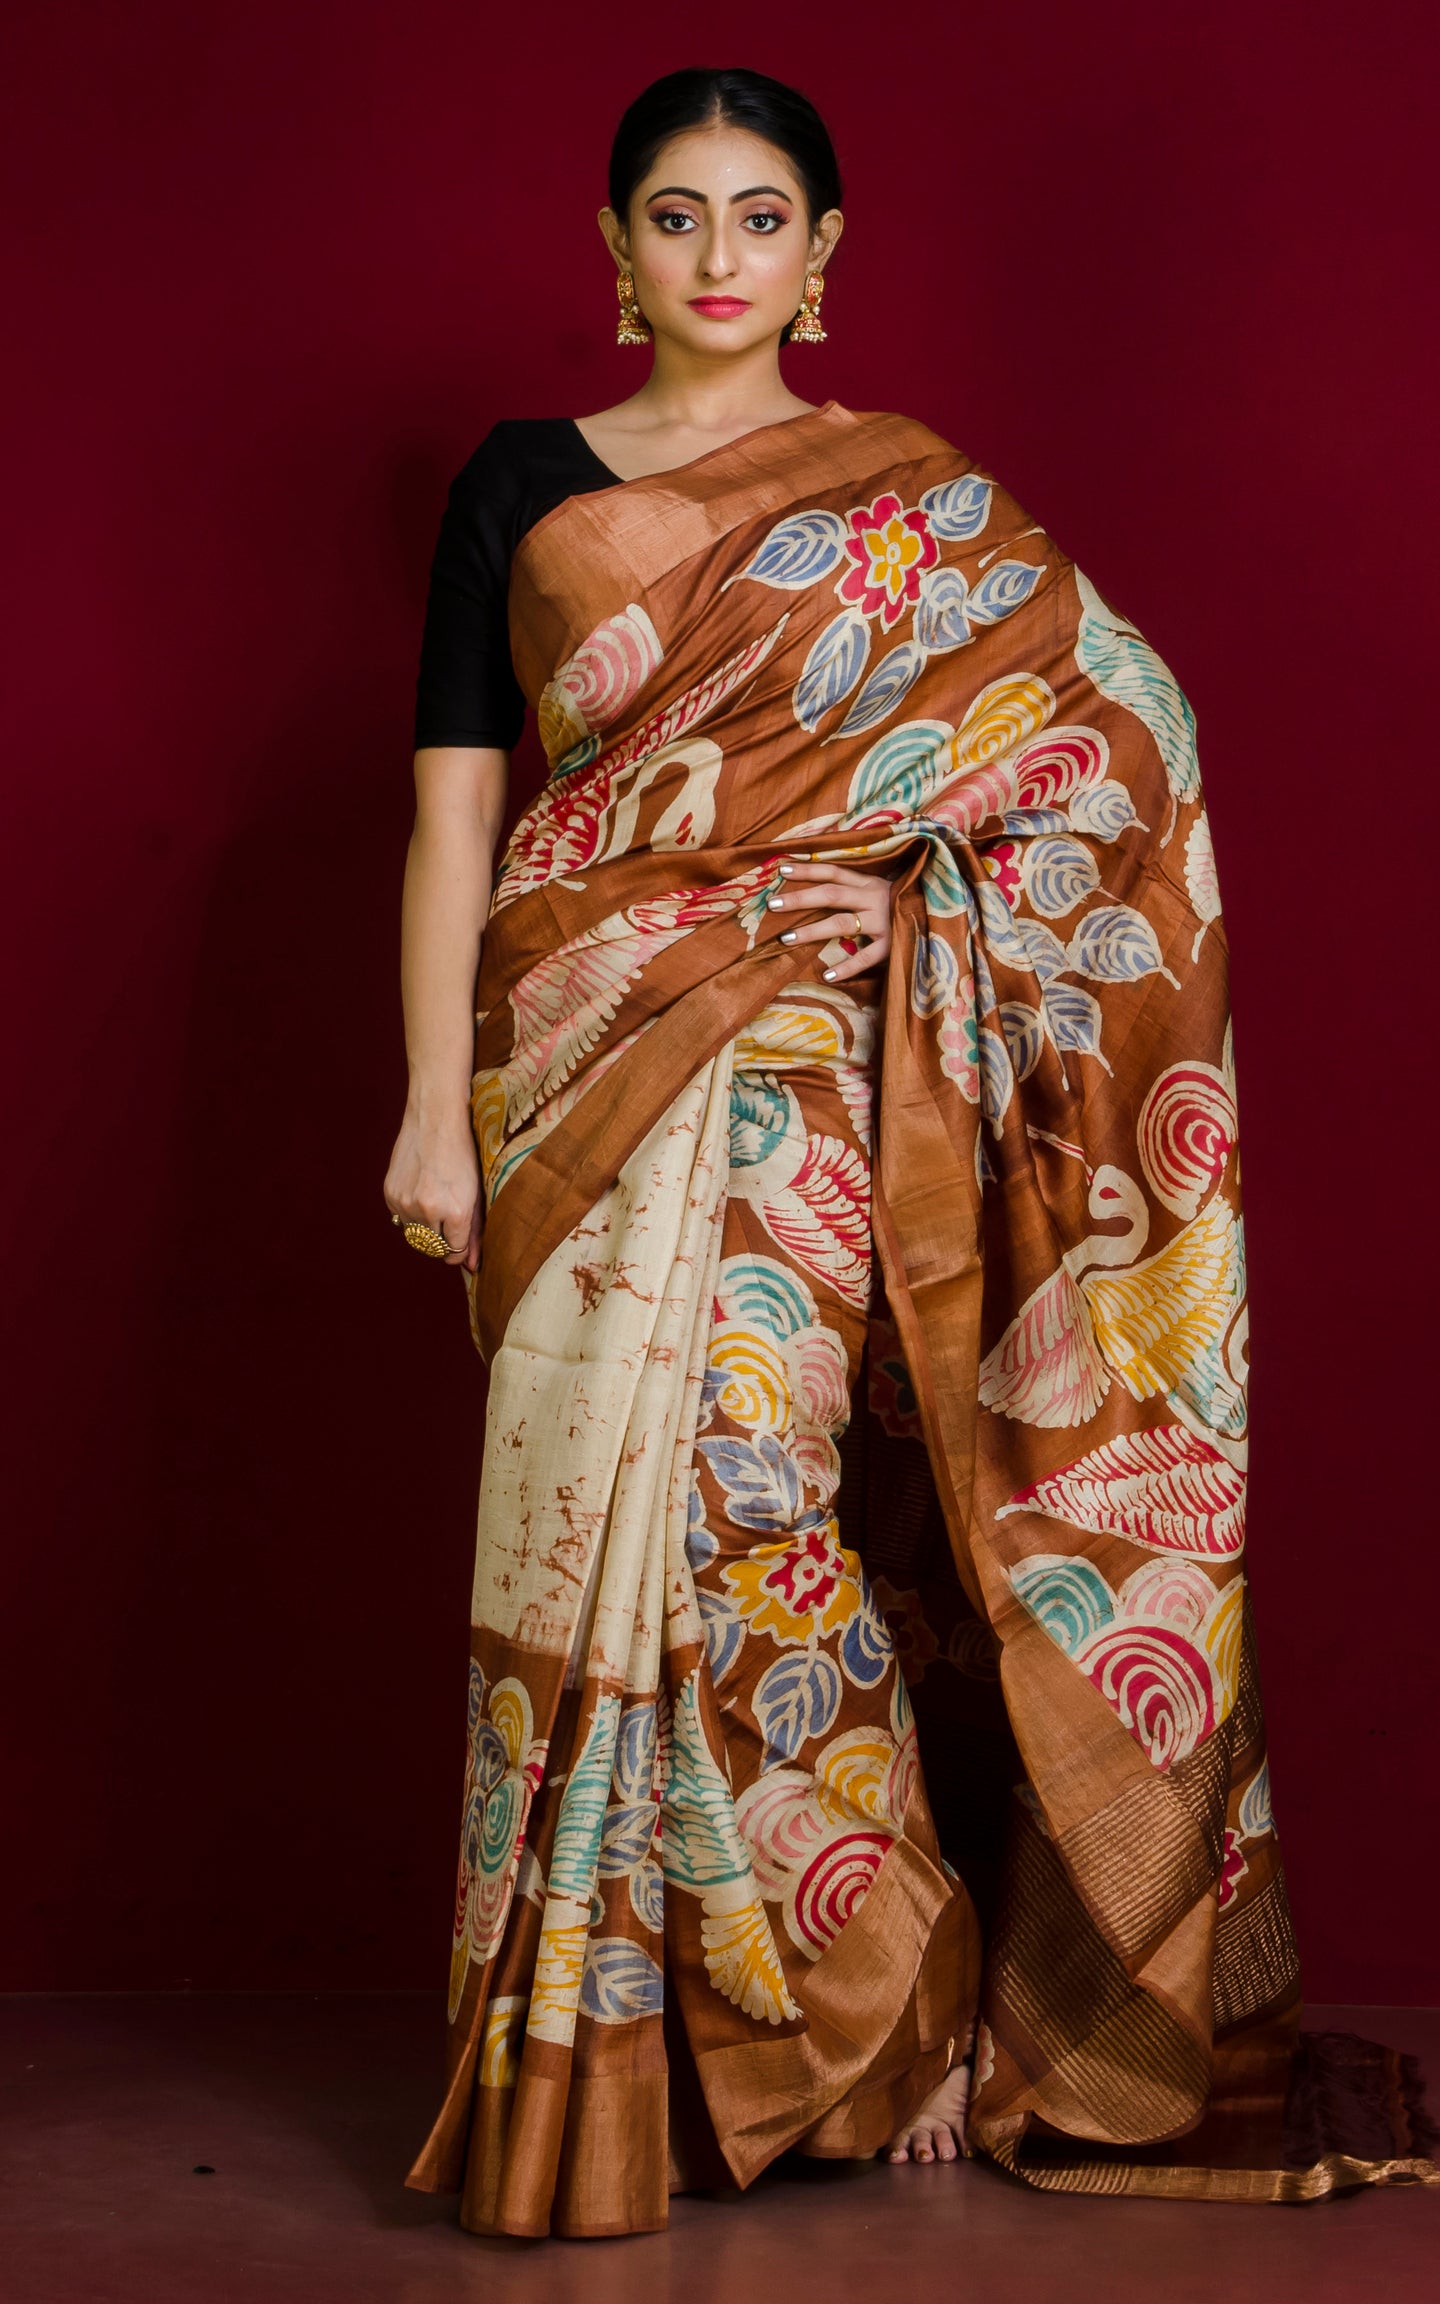 Kalamkari Batick Printed Soft Tussar Silk Saree in Saddle Brown, Brush Gold and Multicolored